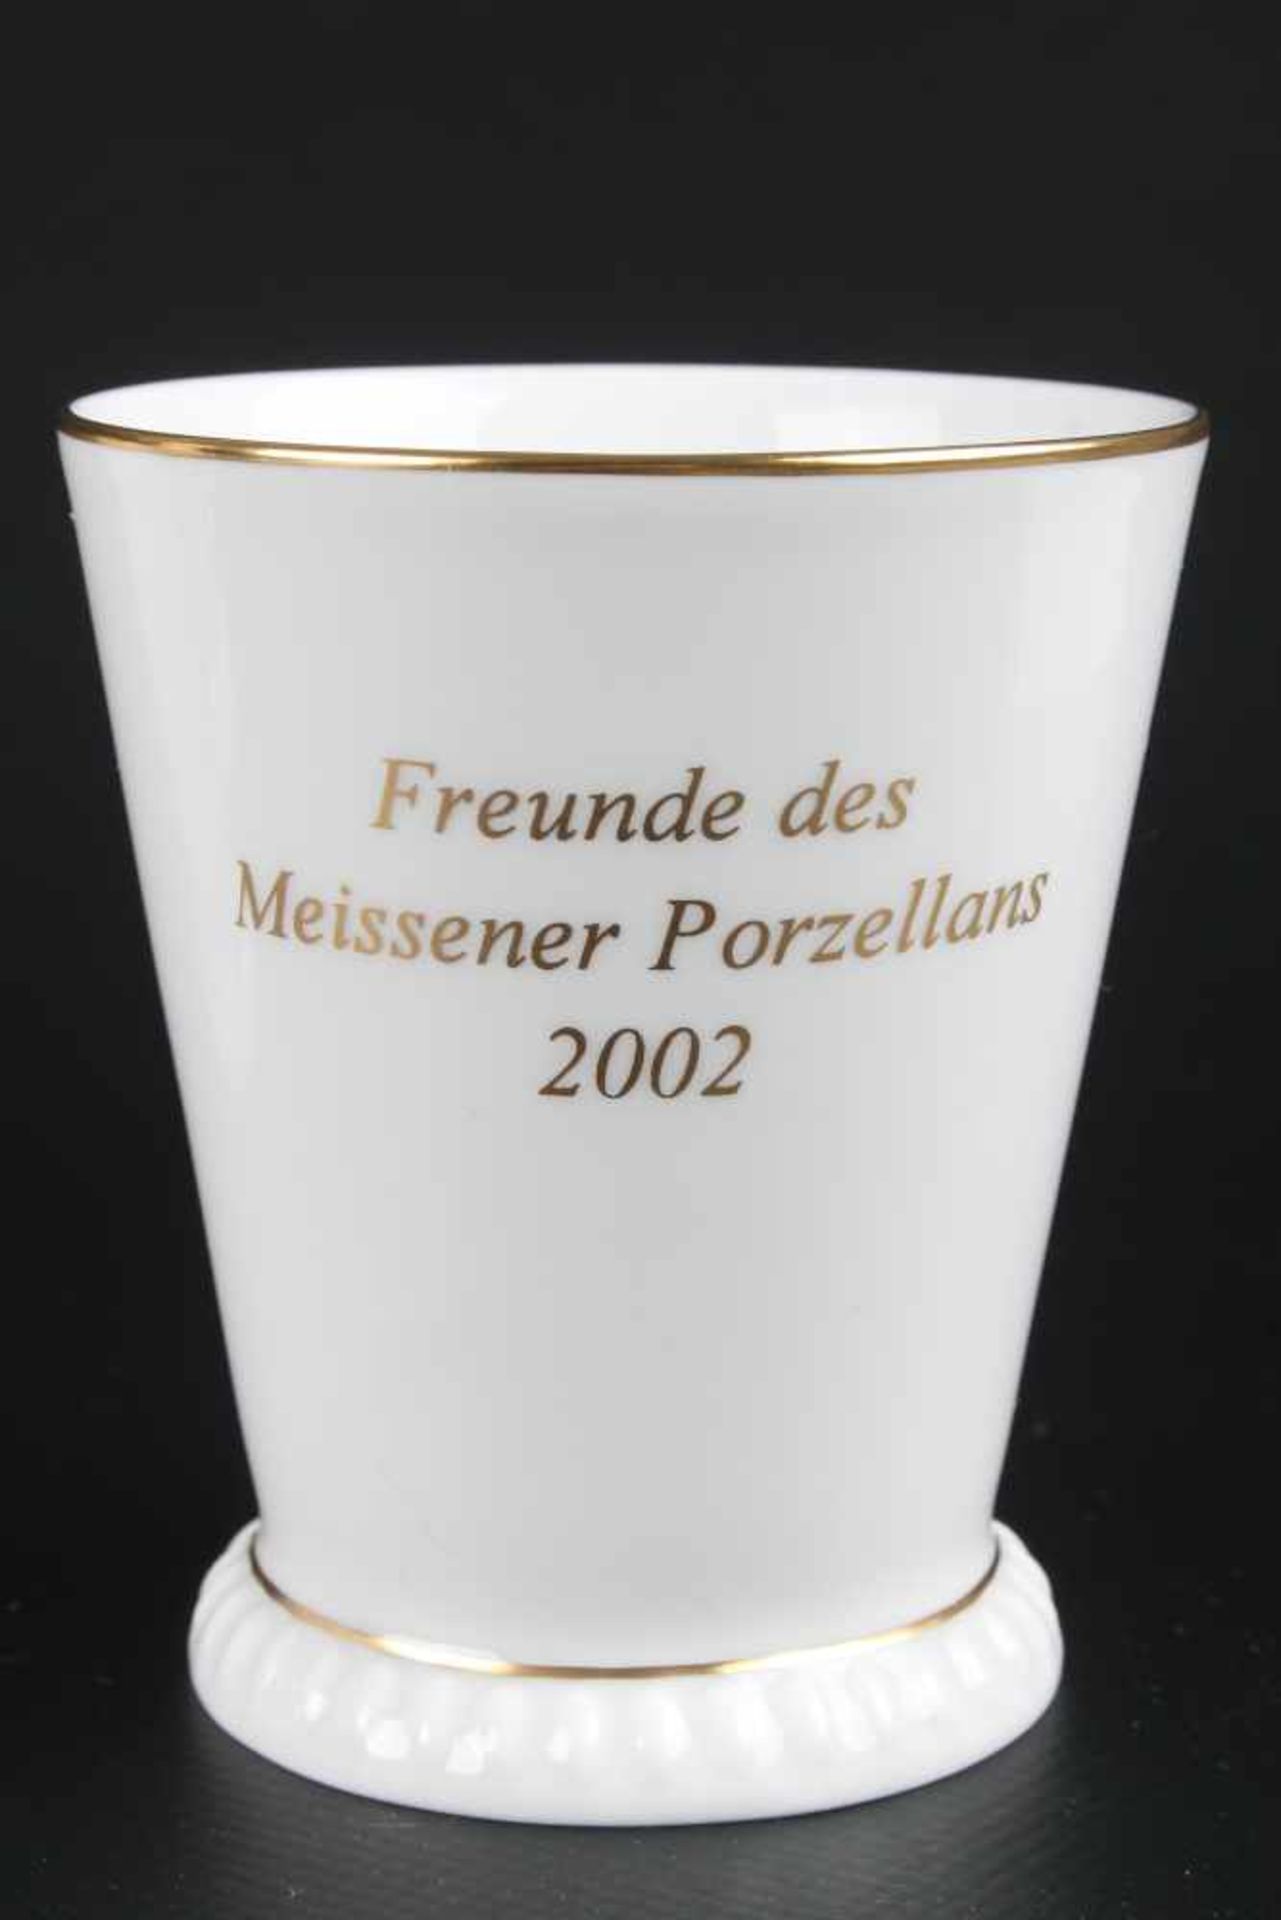 Meissen Porzellan 7 Club-Becher und 2 Schalen, cup / mug and 2 bowls,Porzellan, Freunde des - Bild 4 aus 5